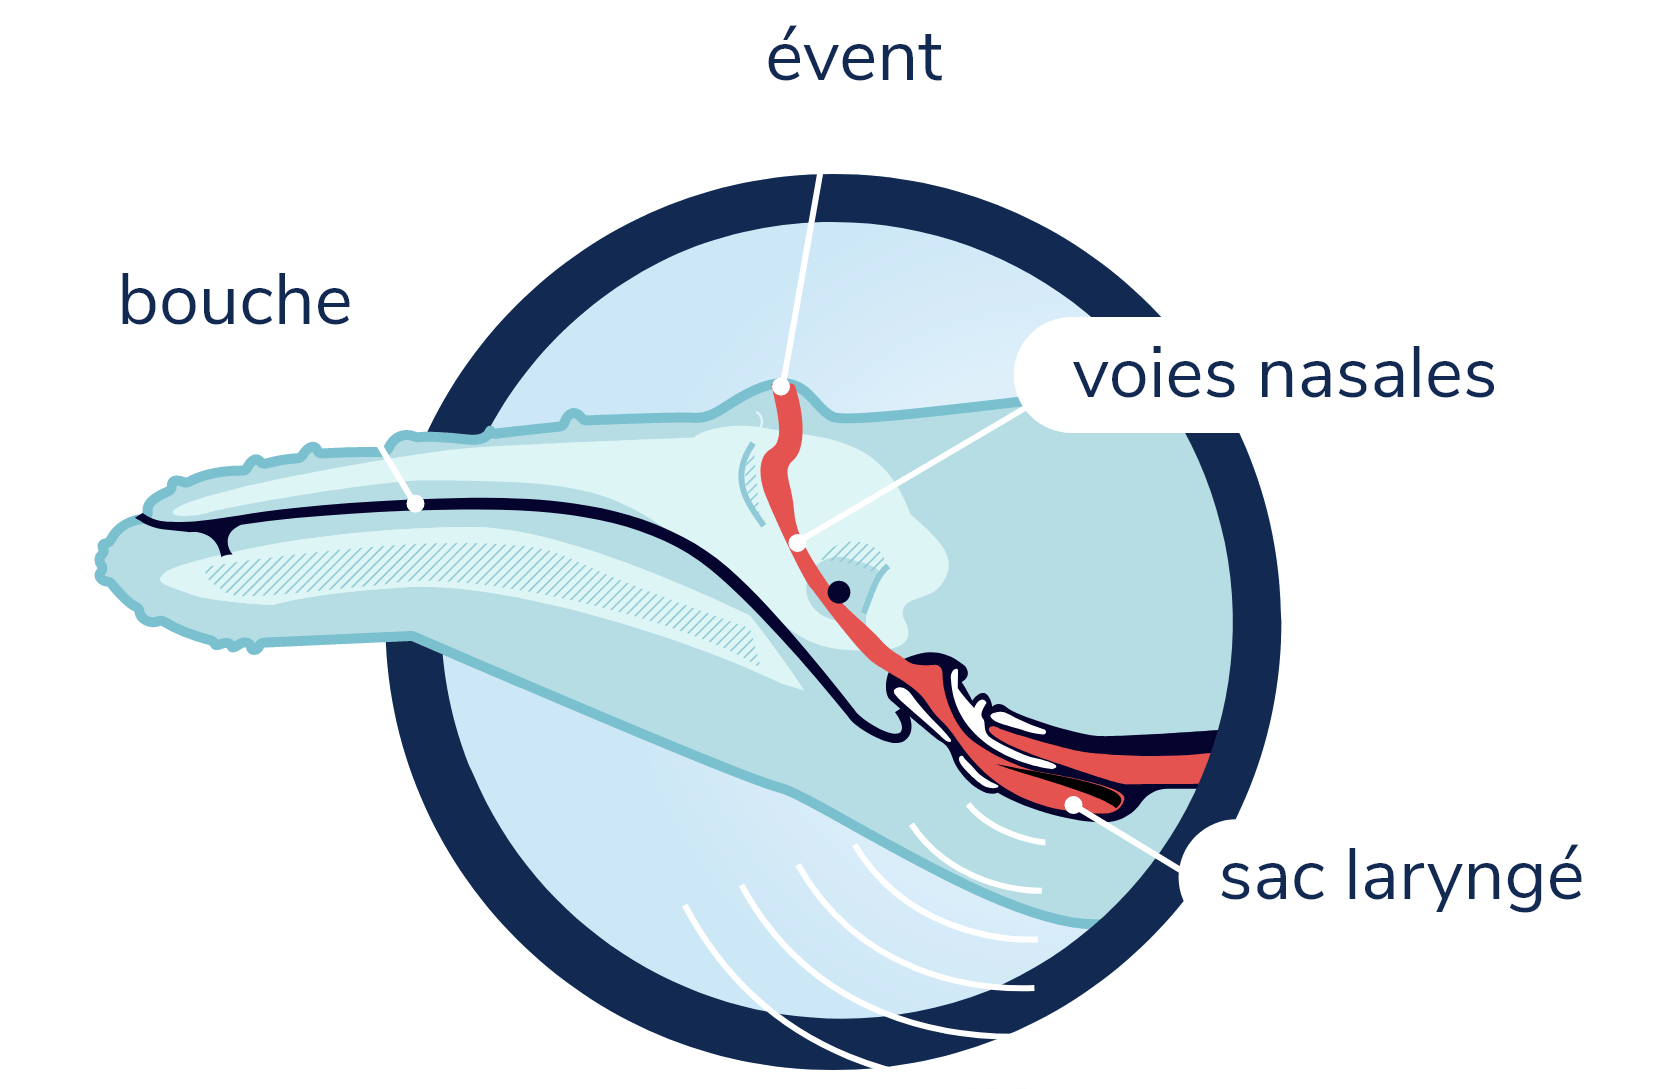 Anatomie de la production de son chez les baleines à fanons. La silhouette d'un rorqual à bosse et son crâne sont visibles en transparence. Les voies nasales partent de l'évent sur le dessus de la tête et traversent le crâne, descendant vers le larynx. Au niveau du larynx se trouve le sac laryngé d'où son émis les sons.